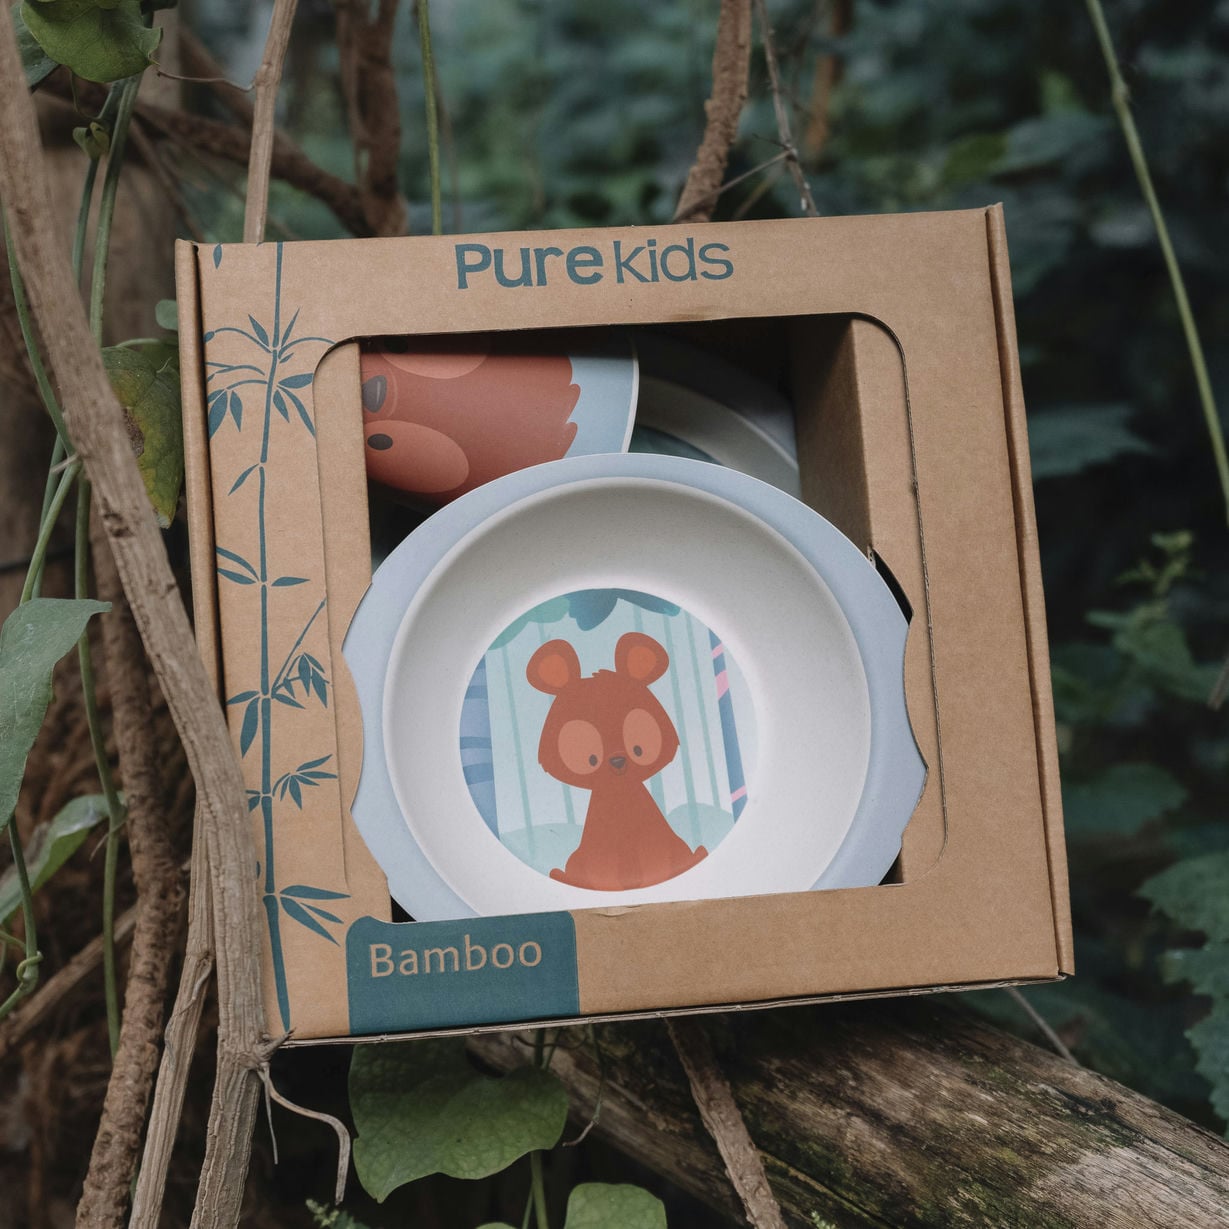 Het servies van Pure Kids ziet er leuk uit en is ook nog eens 100% afbreekbaar. 
Duurzaam eten met een leuk beren servies. 